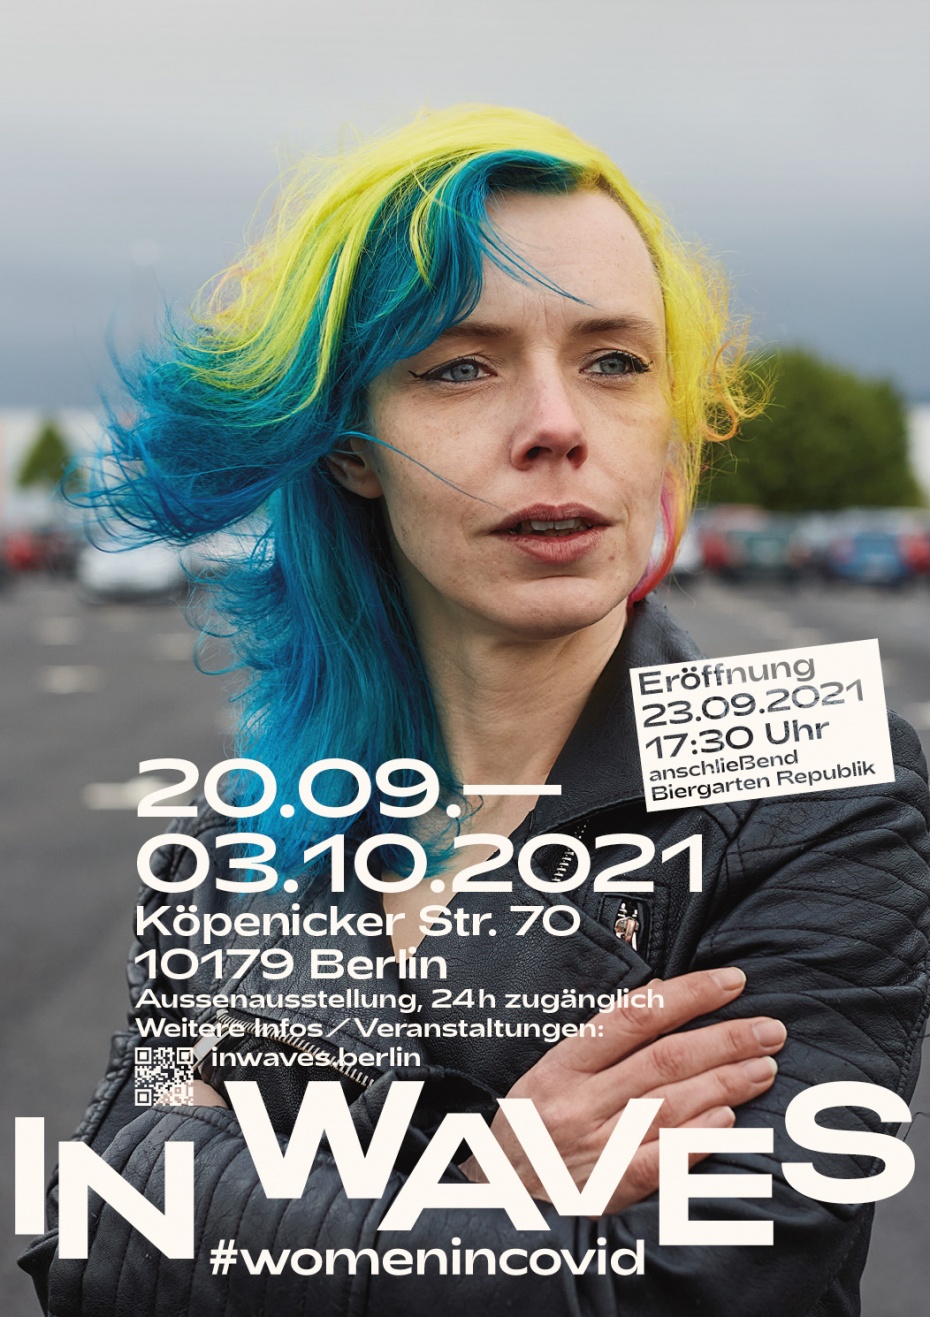 Außenausstellung 24 Fotografinnen vom 20.09.2021 - 03.10.2021 in Berlin